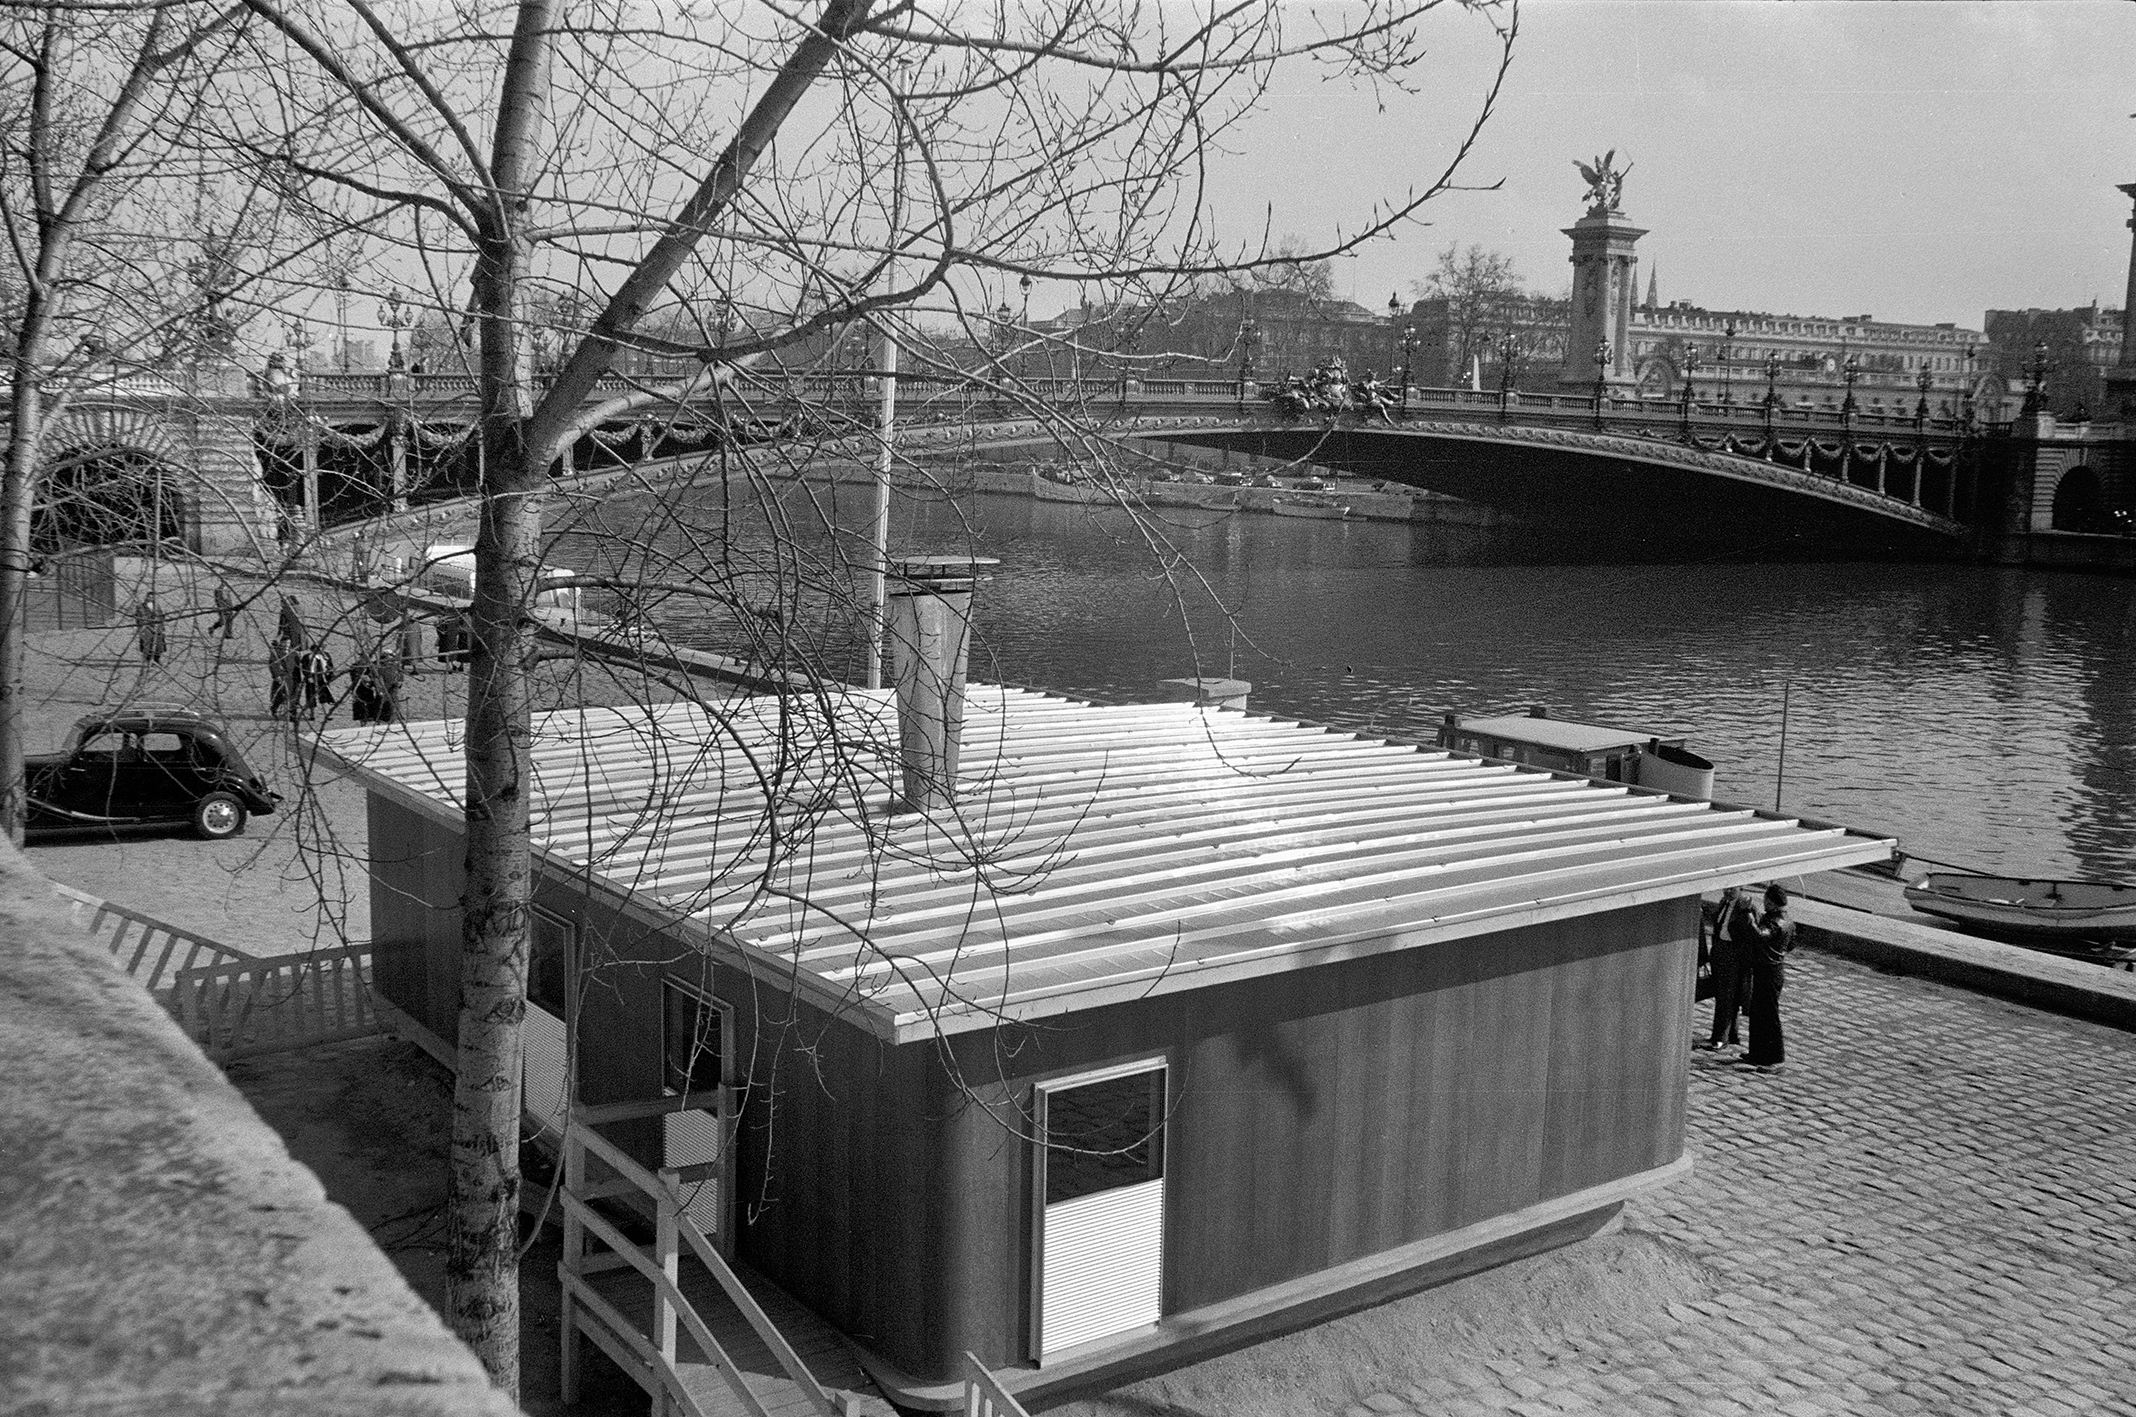 Les Jours Meilleurs demountable house. Prototype of the house designed for Abbé Pierre. Salon des Arts Ménagers home show, housing section Quai Alexandre-III, Paris, February 1956.